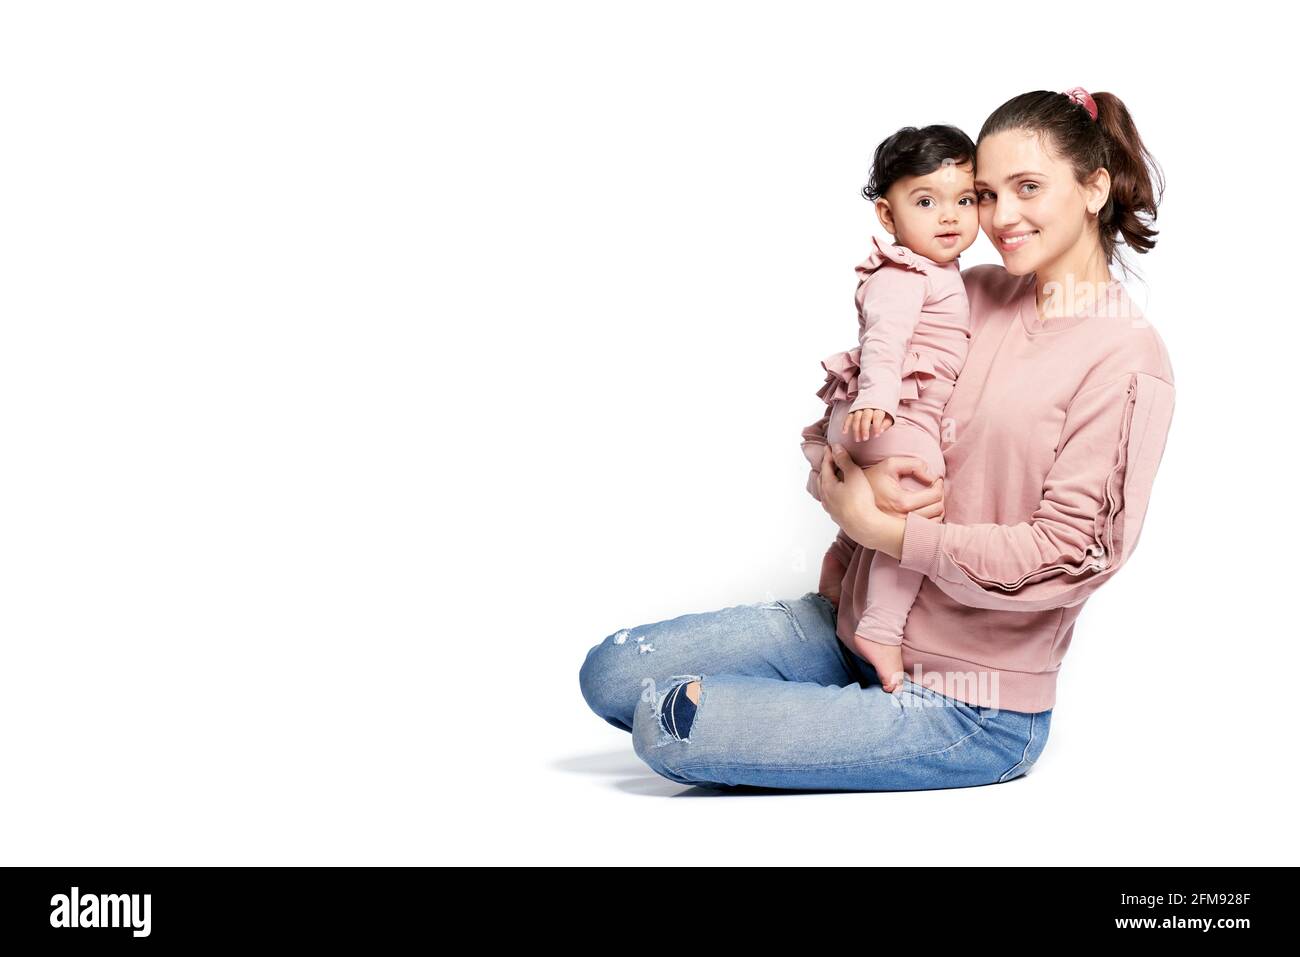 Vista lateral de la madre con una hija sonriente mirando la cámara aislada sobre el fondo blanco del estudio. Retrato de una mujer joven sosteniendo a un niño dulce adorable en brazos mientras está sentado en el suelo. Foto de stock